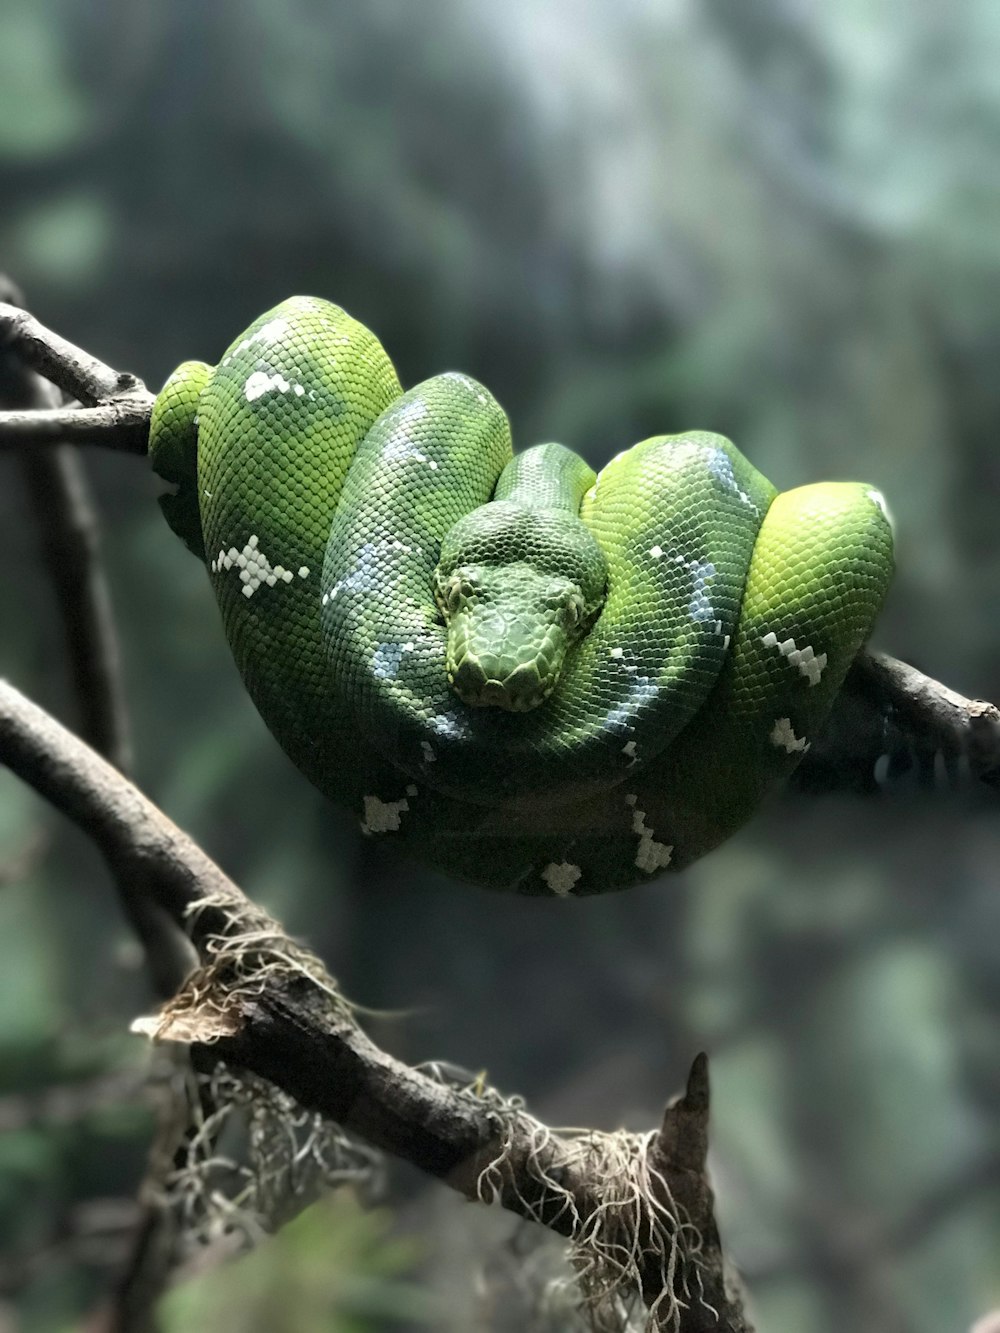 serpente verde su ramoscello grigio nella fotografia a fuoco selettiva